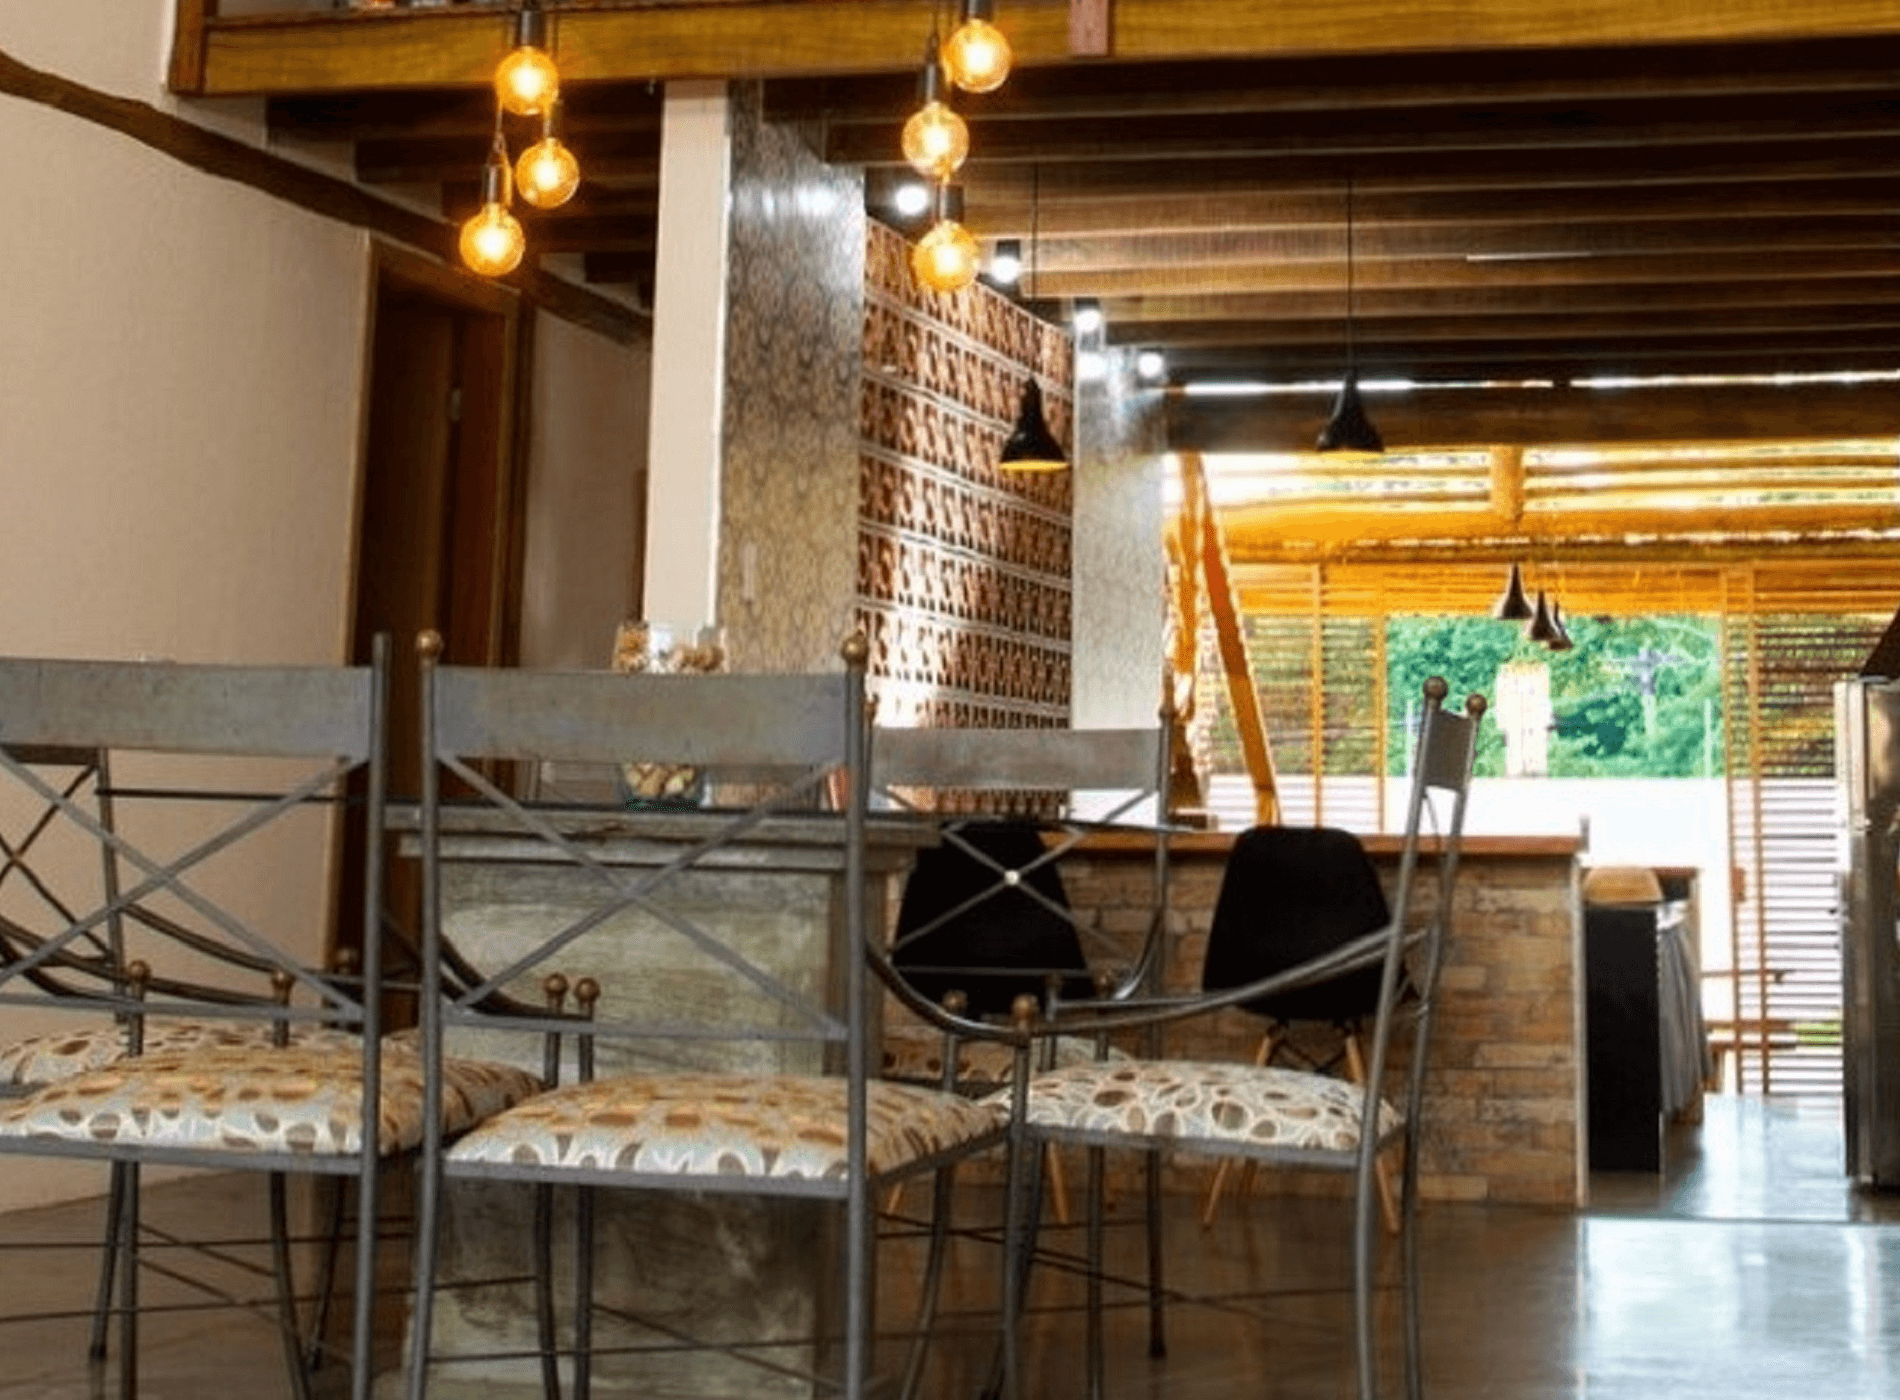 A parede com cobogós cerâmicos separa a área intima da casa enquanto que o balcão com tampo de madeira delimita o espaço da cozinha e a integra com a Área Social. Campinas – S.P.